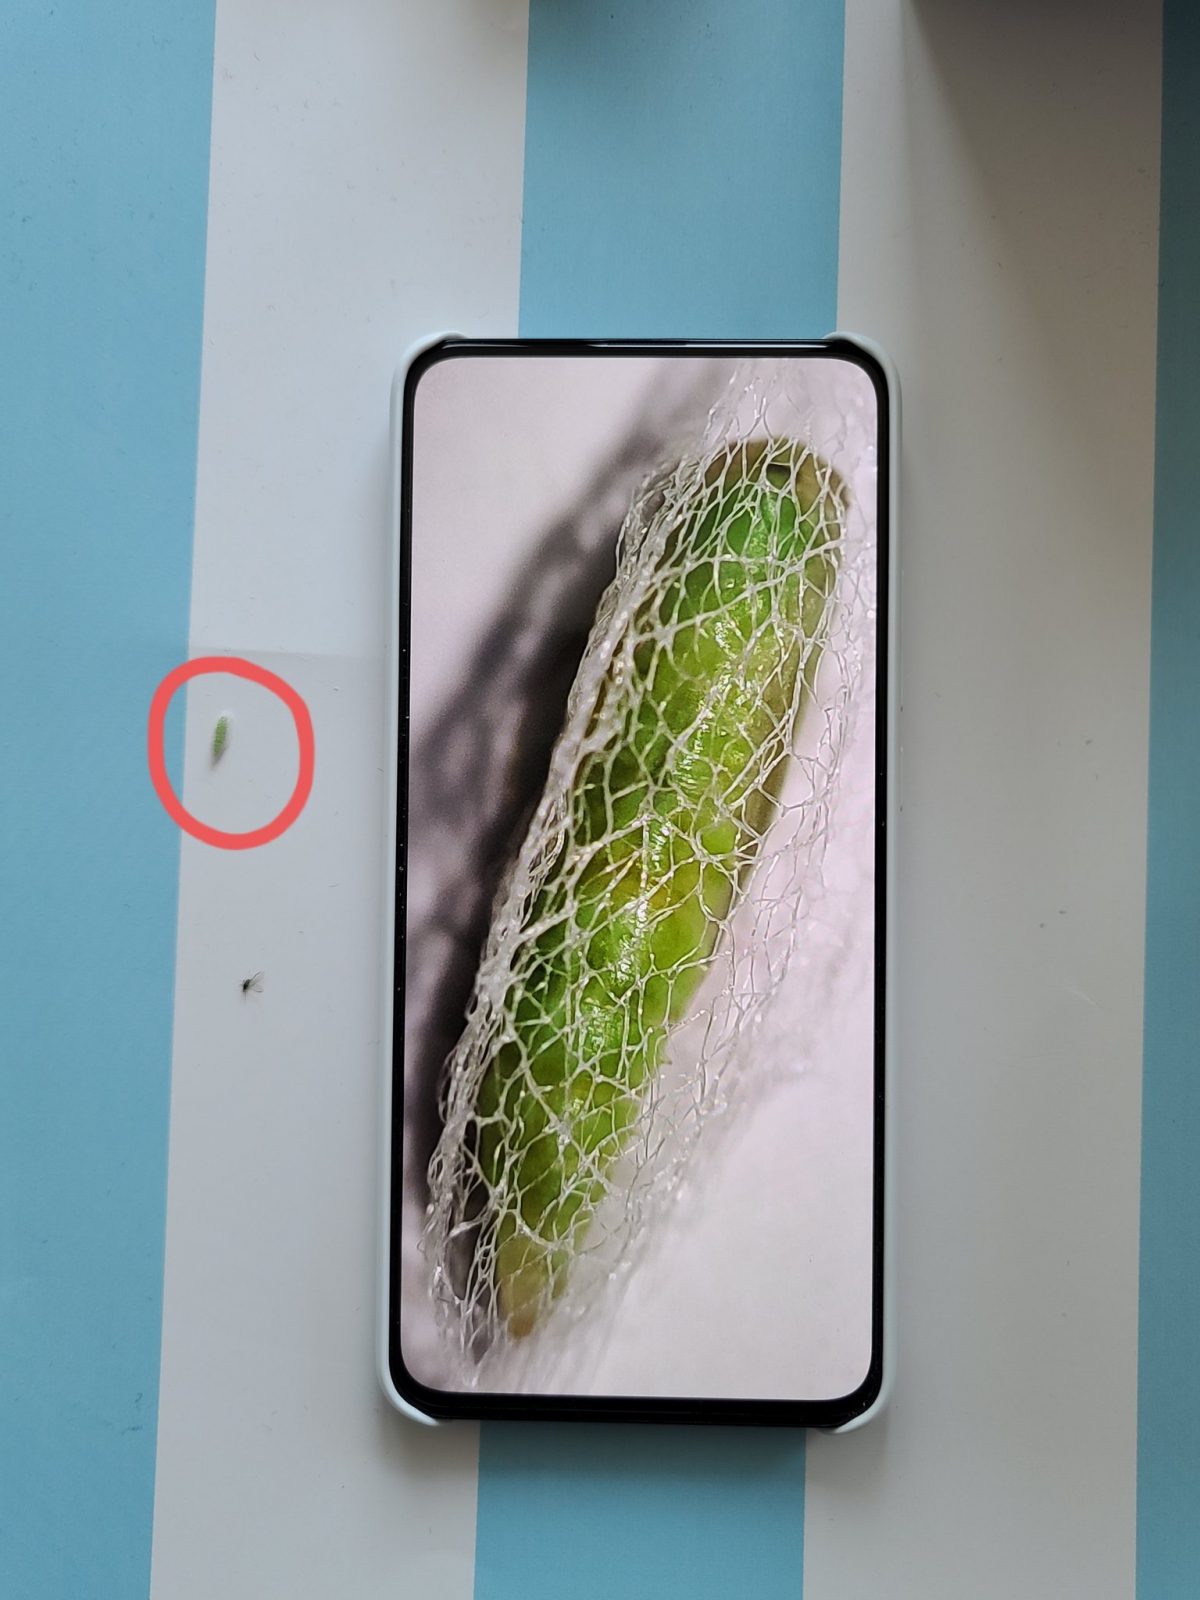 Инсайдер испытал камеру Xiaomi Redmi K30 Pro в качестве микроскопа